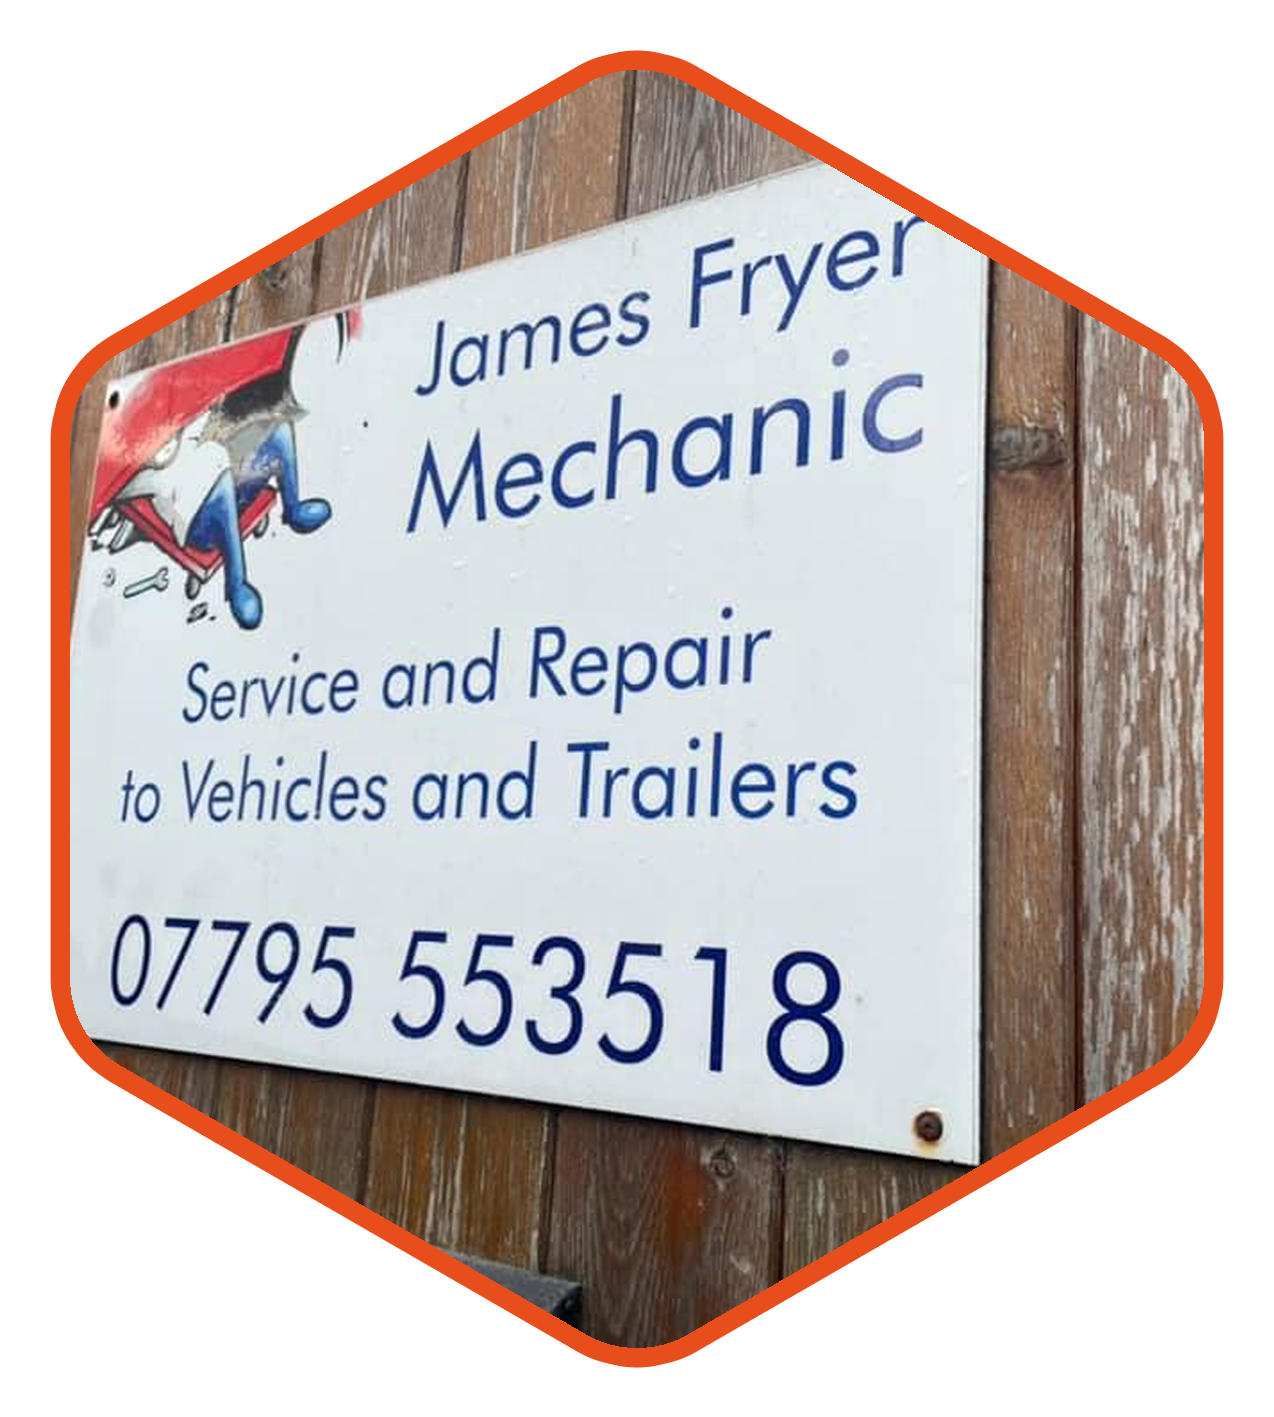 James Fryer Mechanic